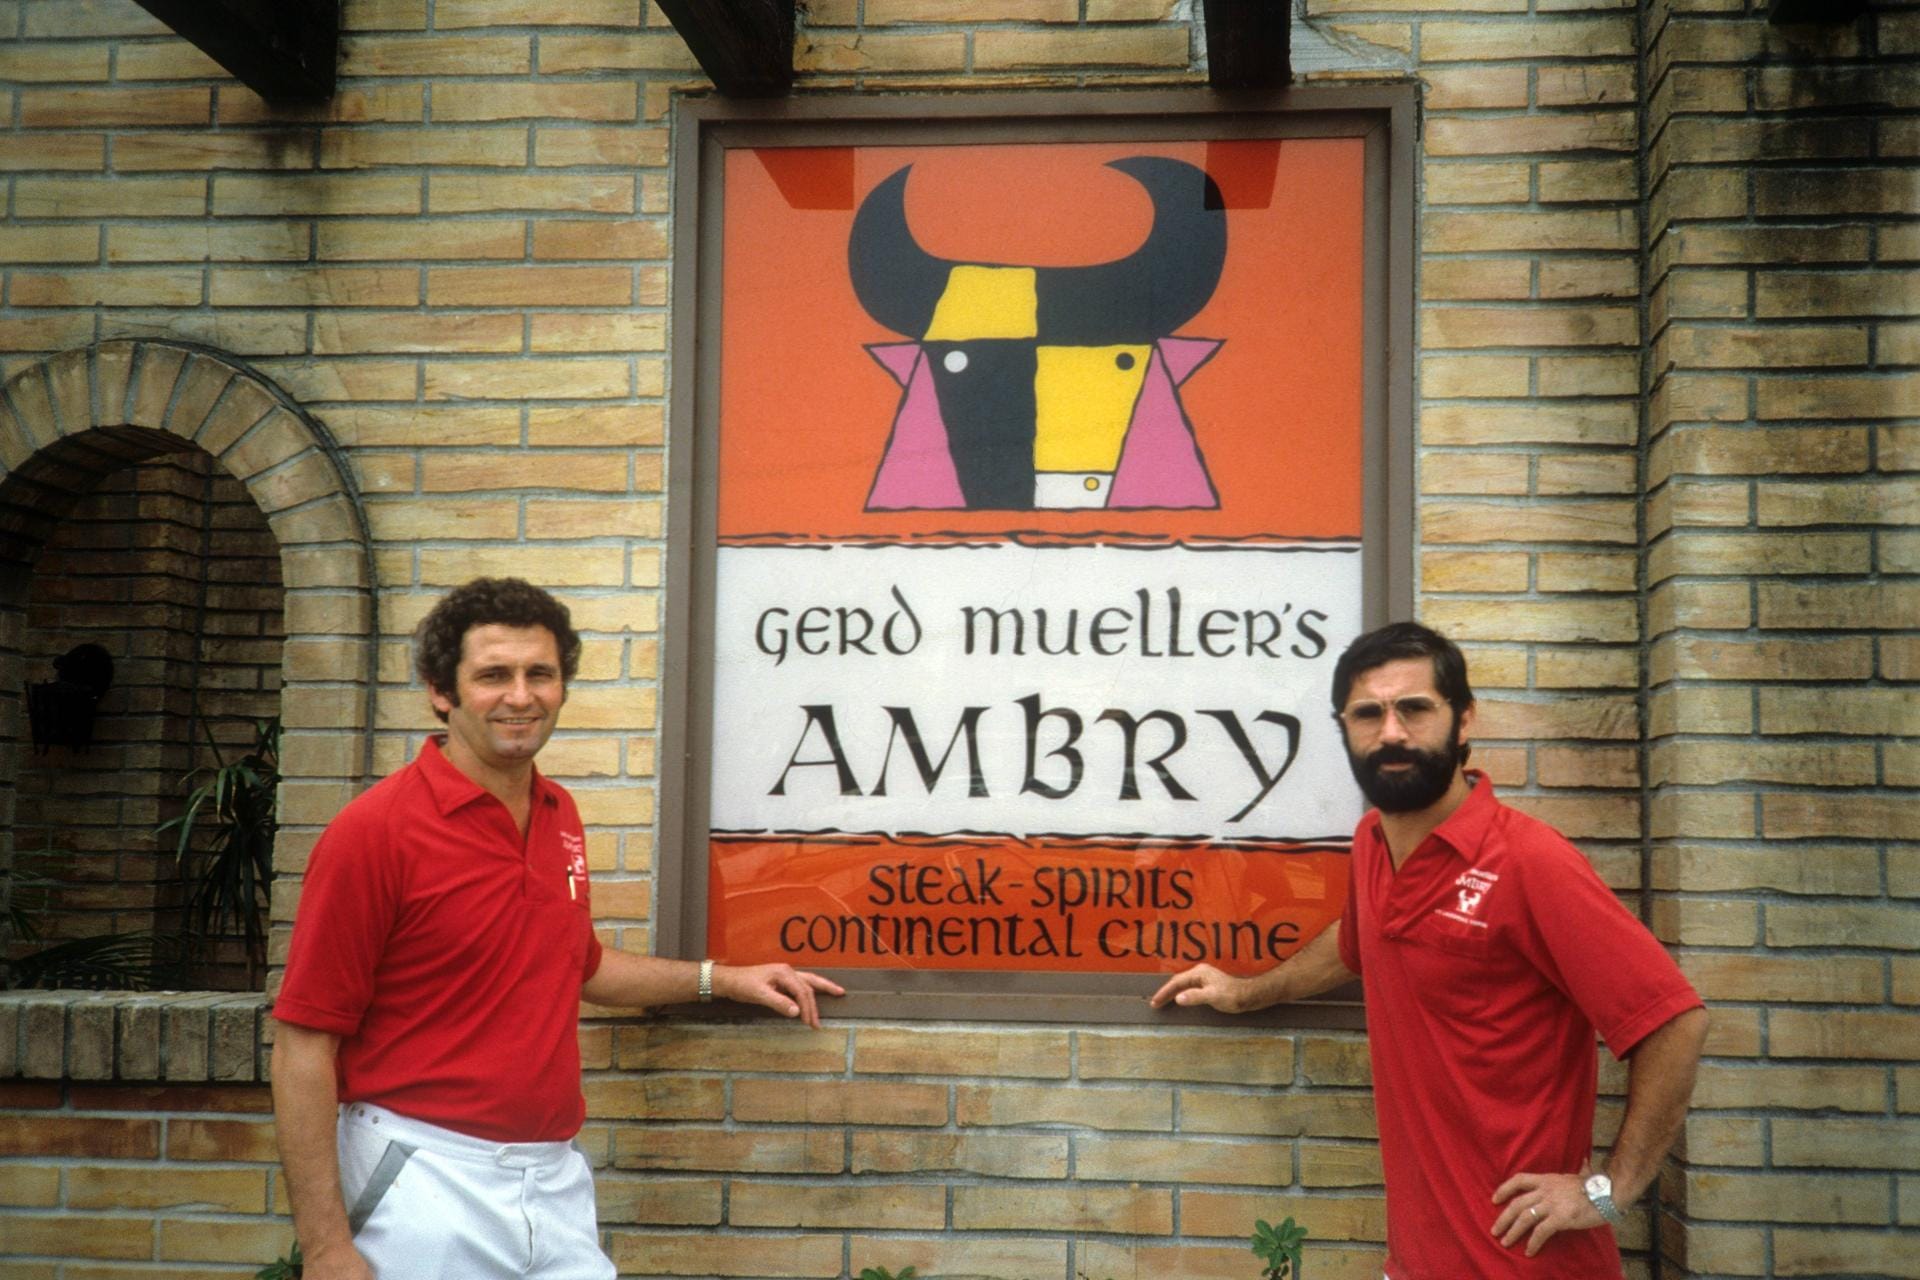 Gemeinsam mit einem befreundeten deutschen Ehepaar übernahm Müller in Fort Lauderdale das Steakhouse "The Ambry", welches später zu "Gerd Mueller’s Ambry" wurde. Doch das Geschäft lief nicht gut. Auch mit seiner Rolle als prominenter Gastgeber fremdelte Müller und verfiel dem Alkohol.